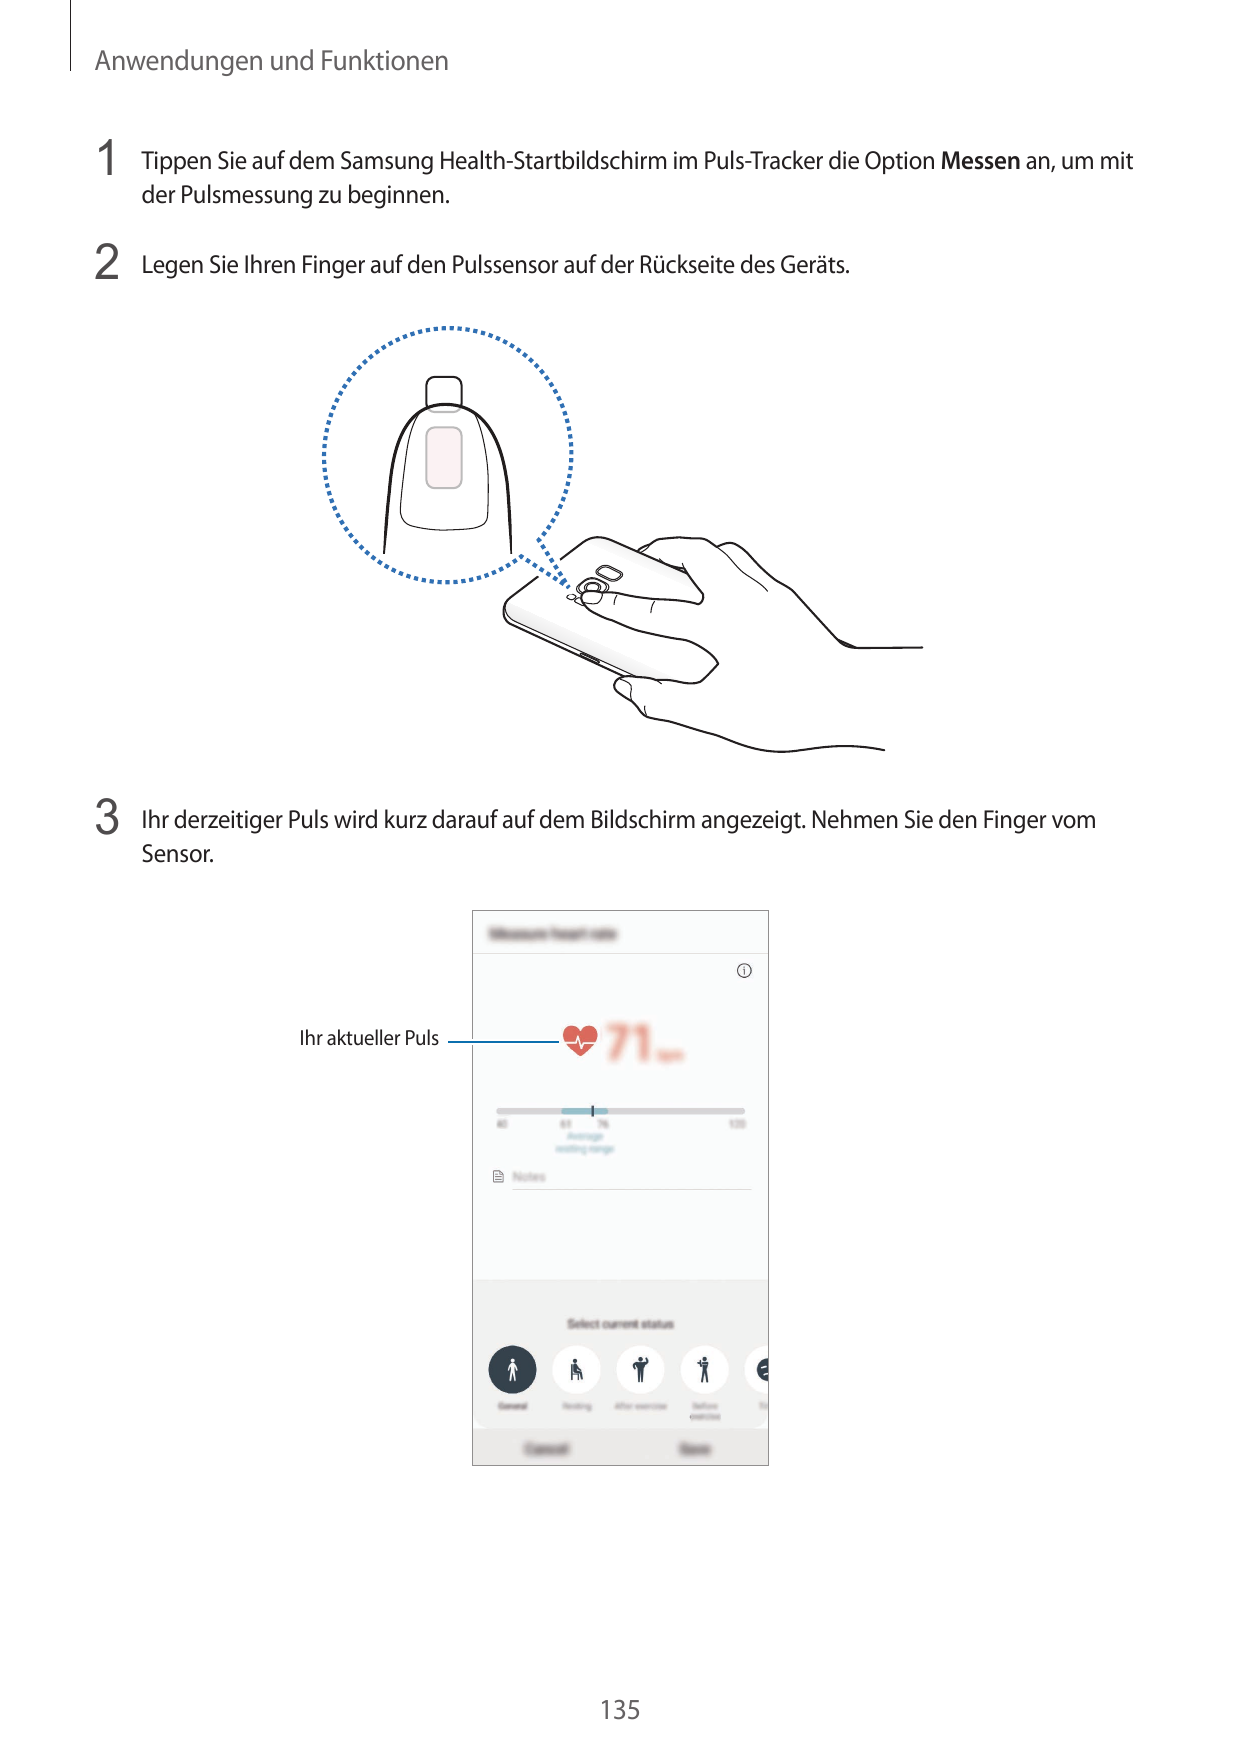 Anwendungen und Funktionen1 Tippen Sie auf dem Samsung Health-Startbildschirm im Puls-Tracker die Option Messen an, um mitder Pu